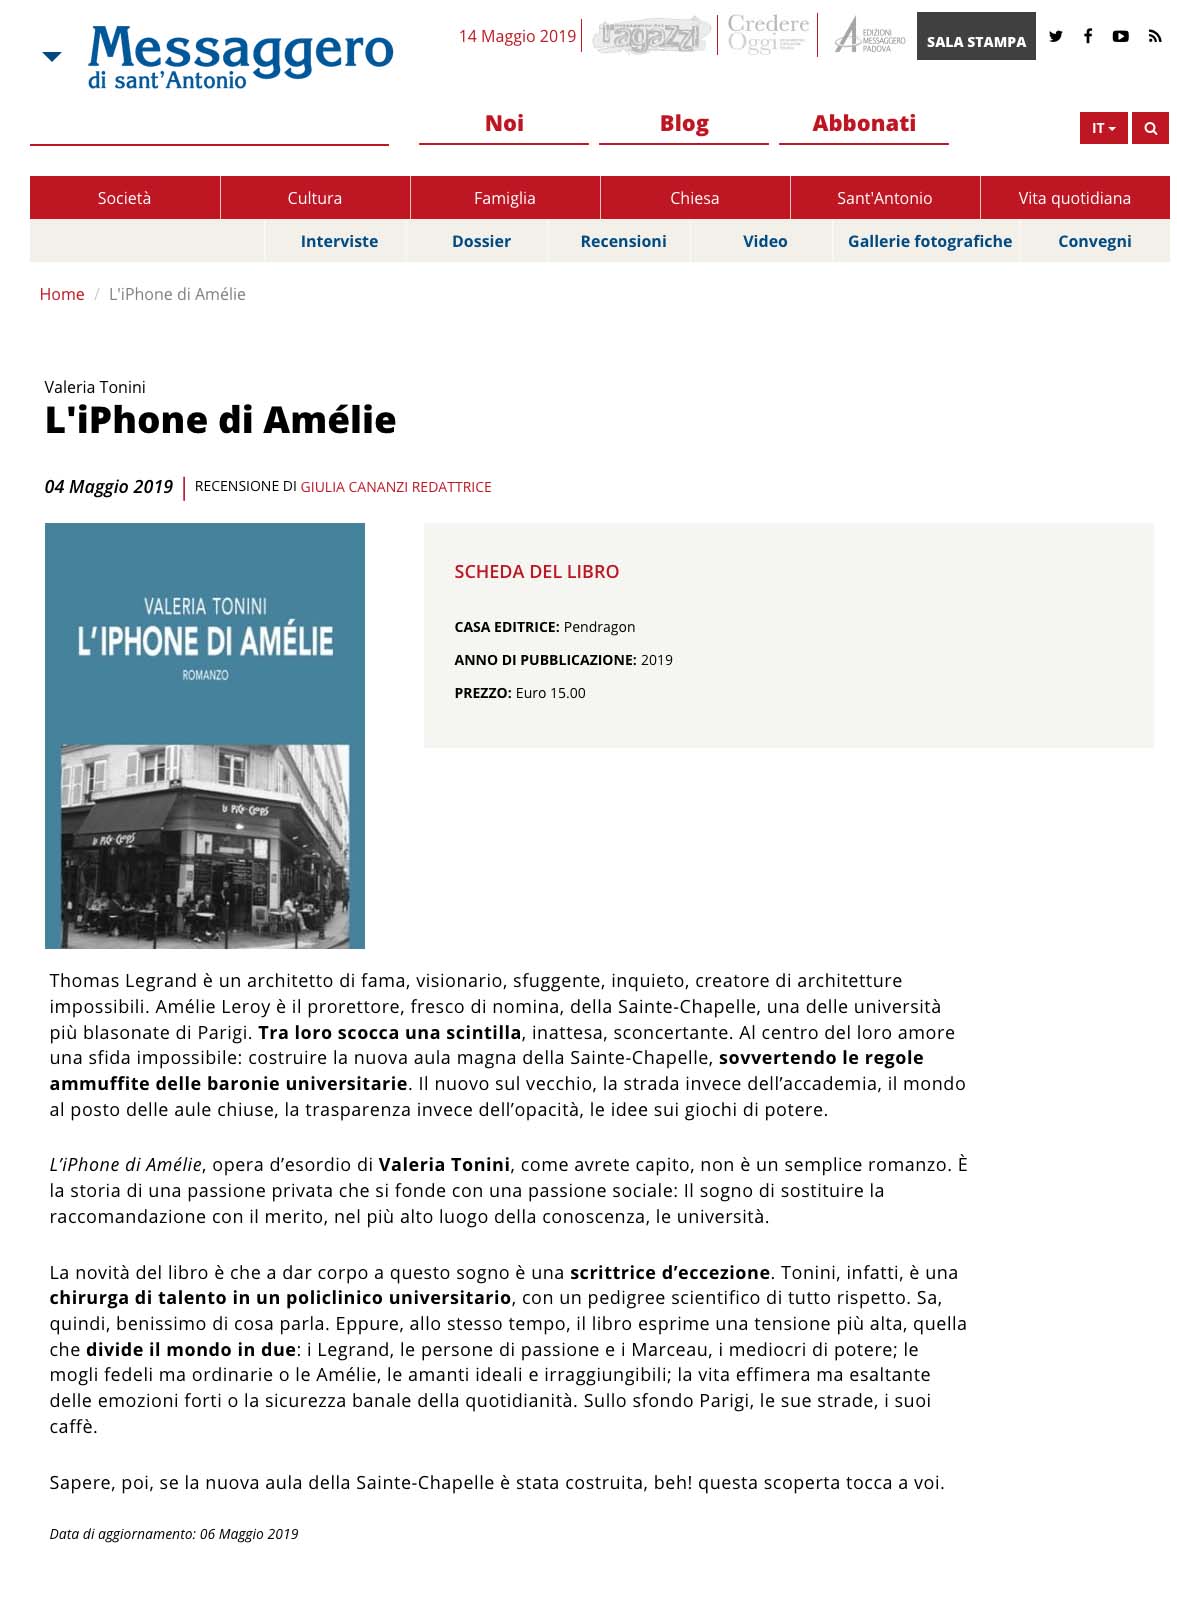 L'iphone di Amélie